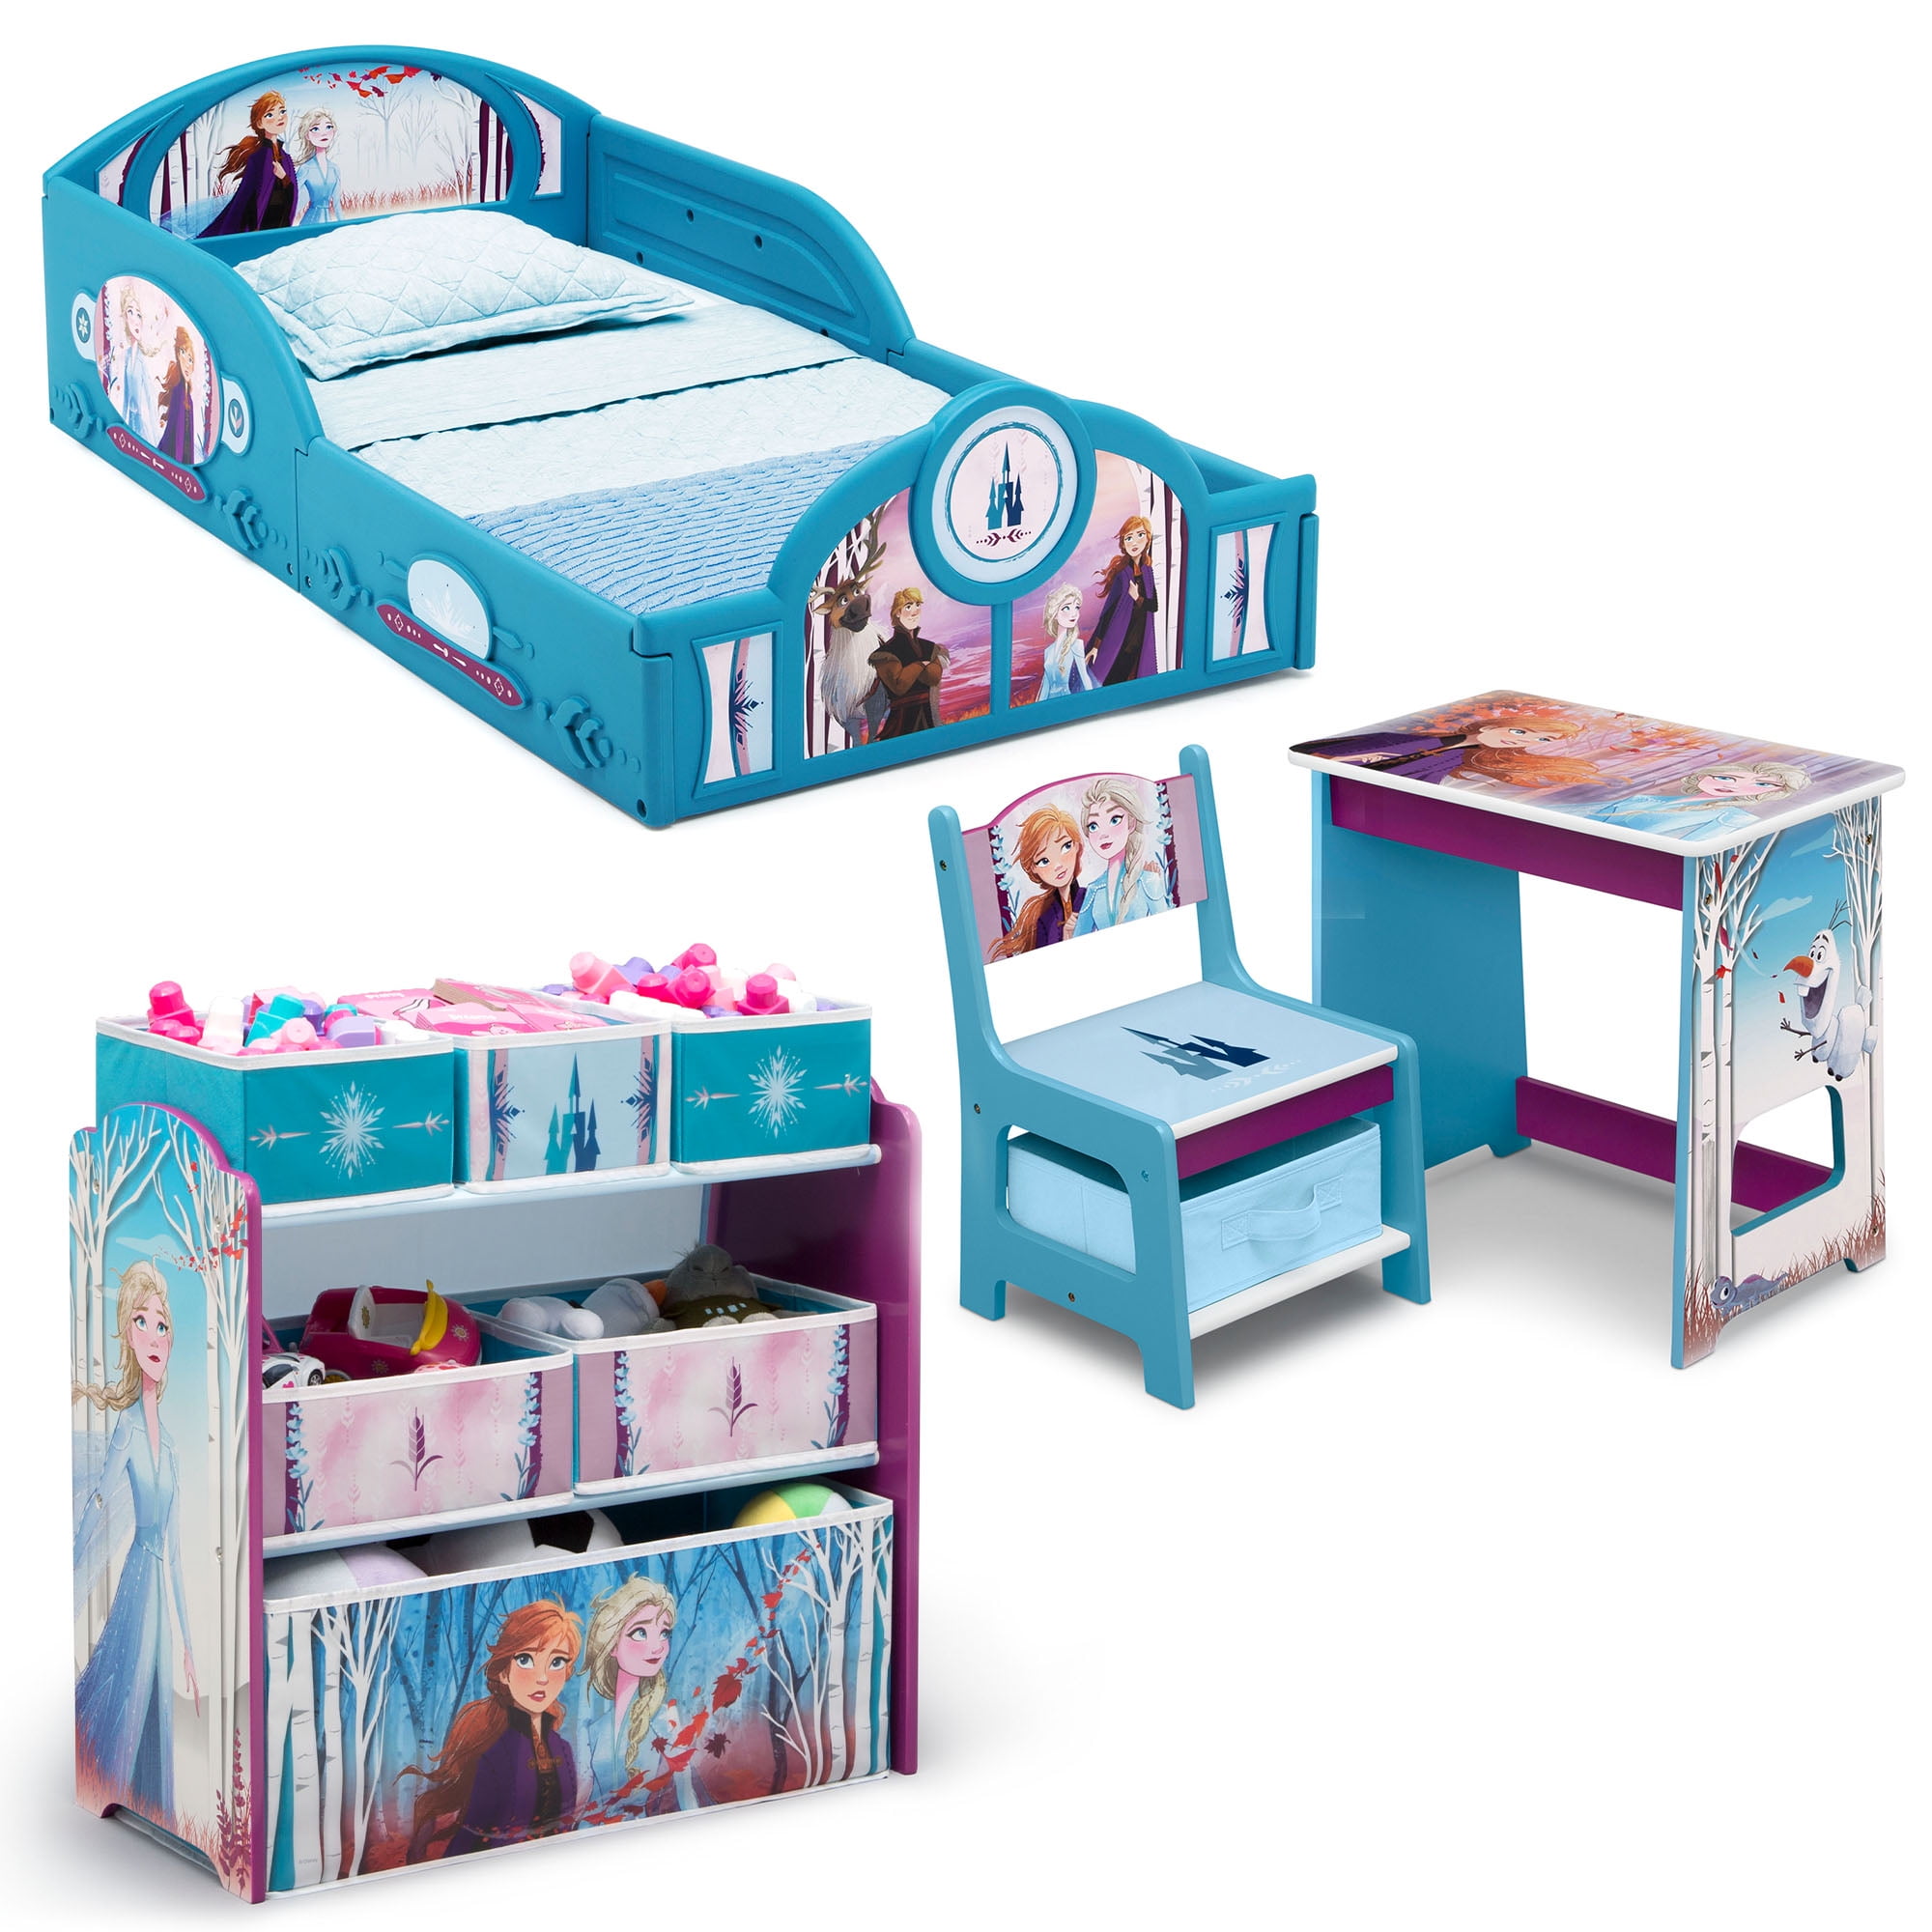 Disney Frozen Ii 4 Piece Room In A Box, Elsa Bunk Bed